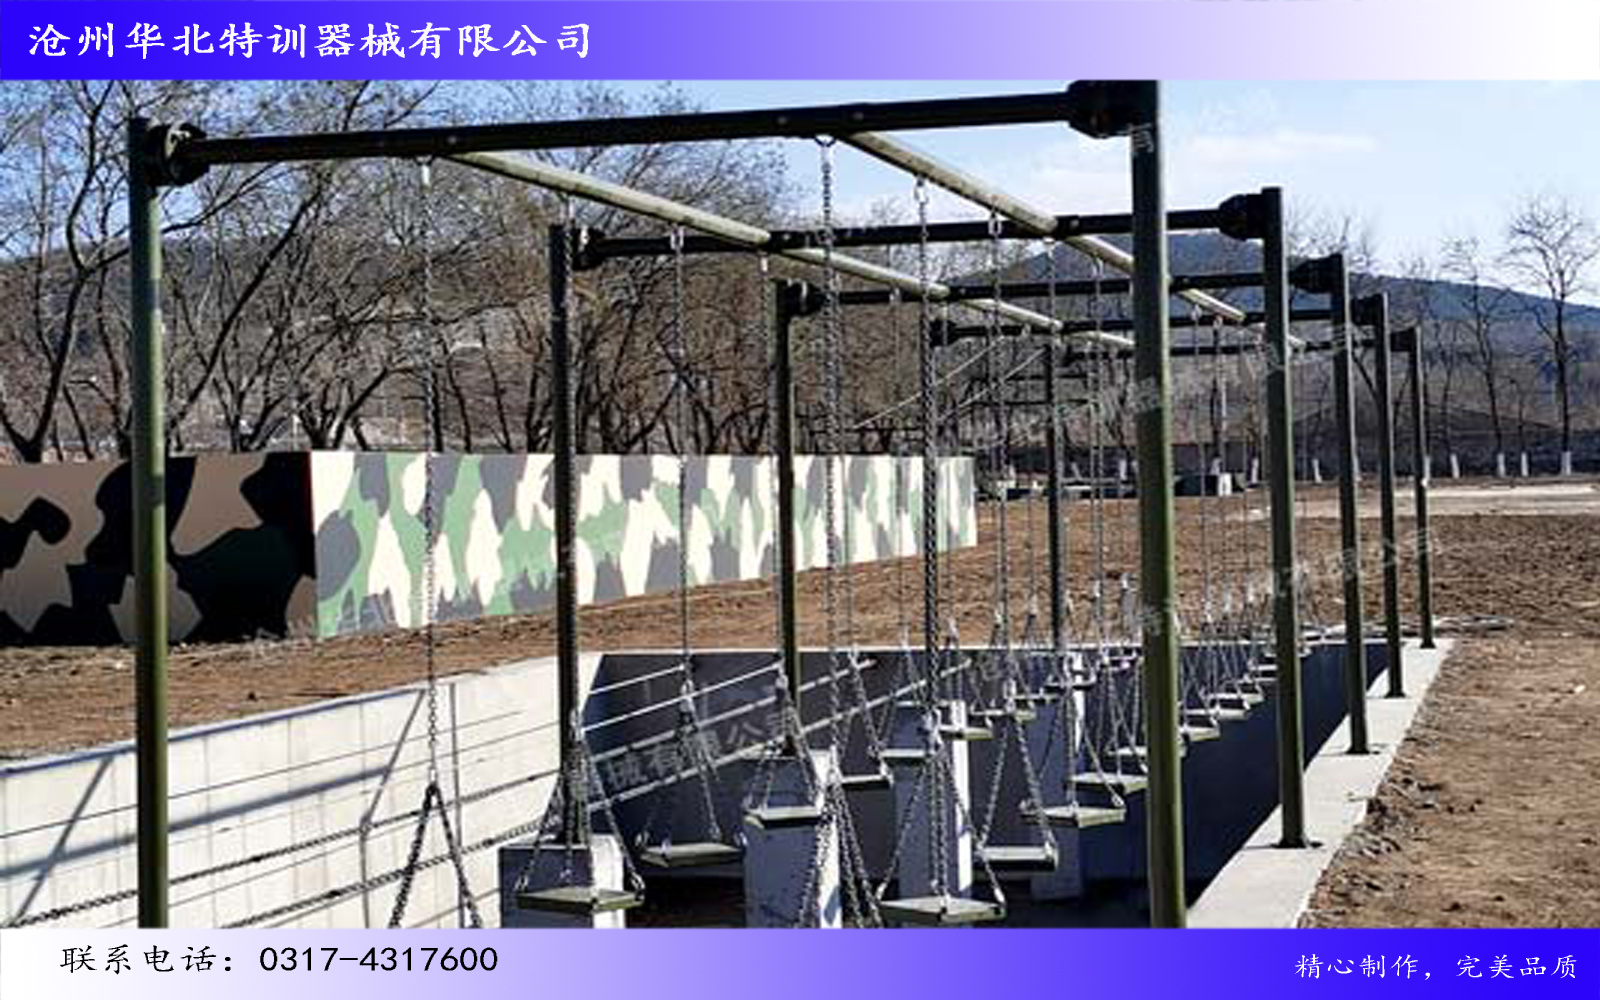 中国人民解放军某部队心理行为训练场项目圆满完工！